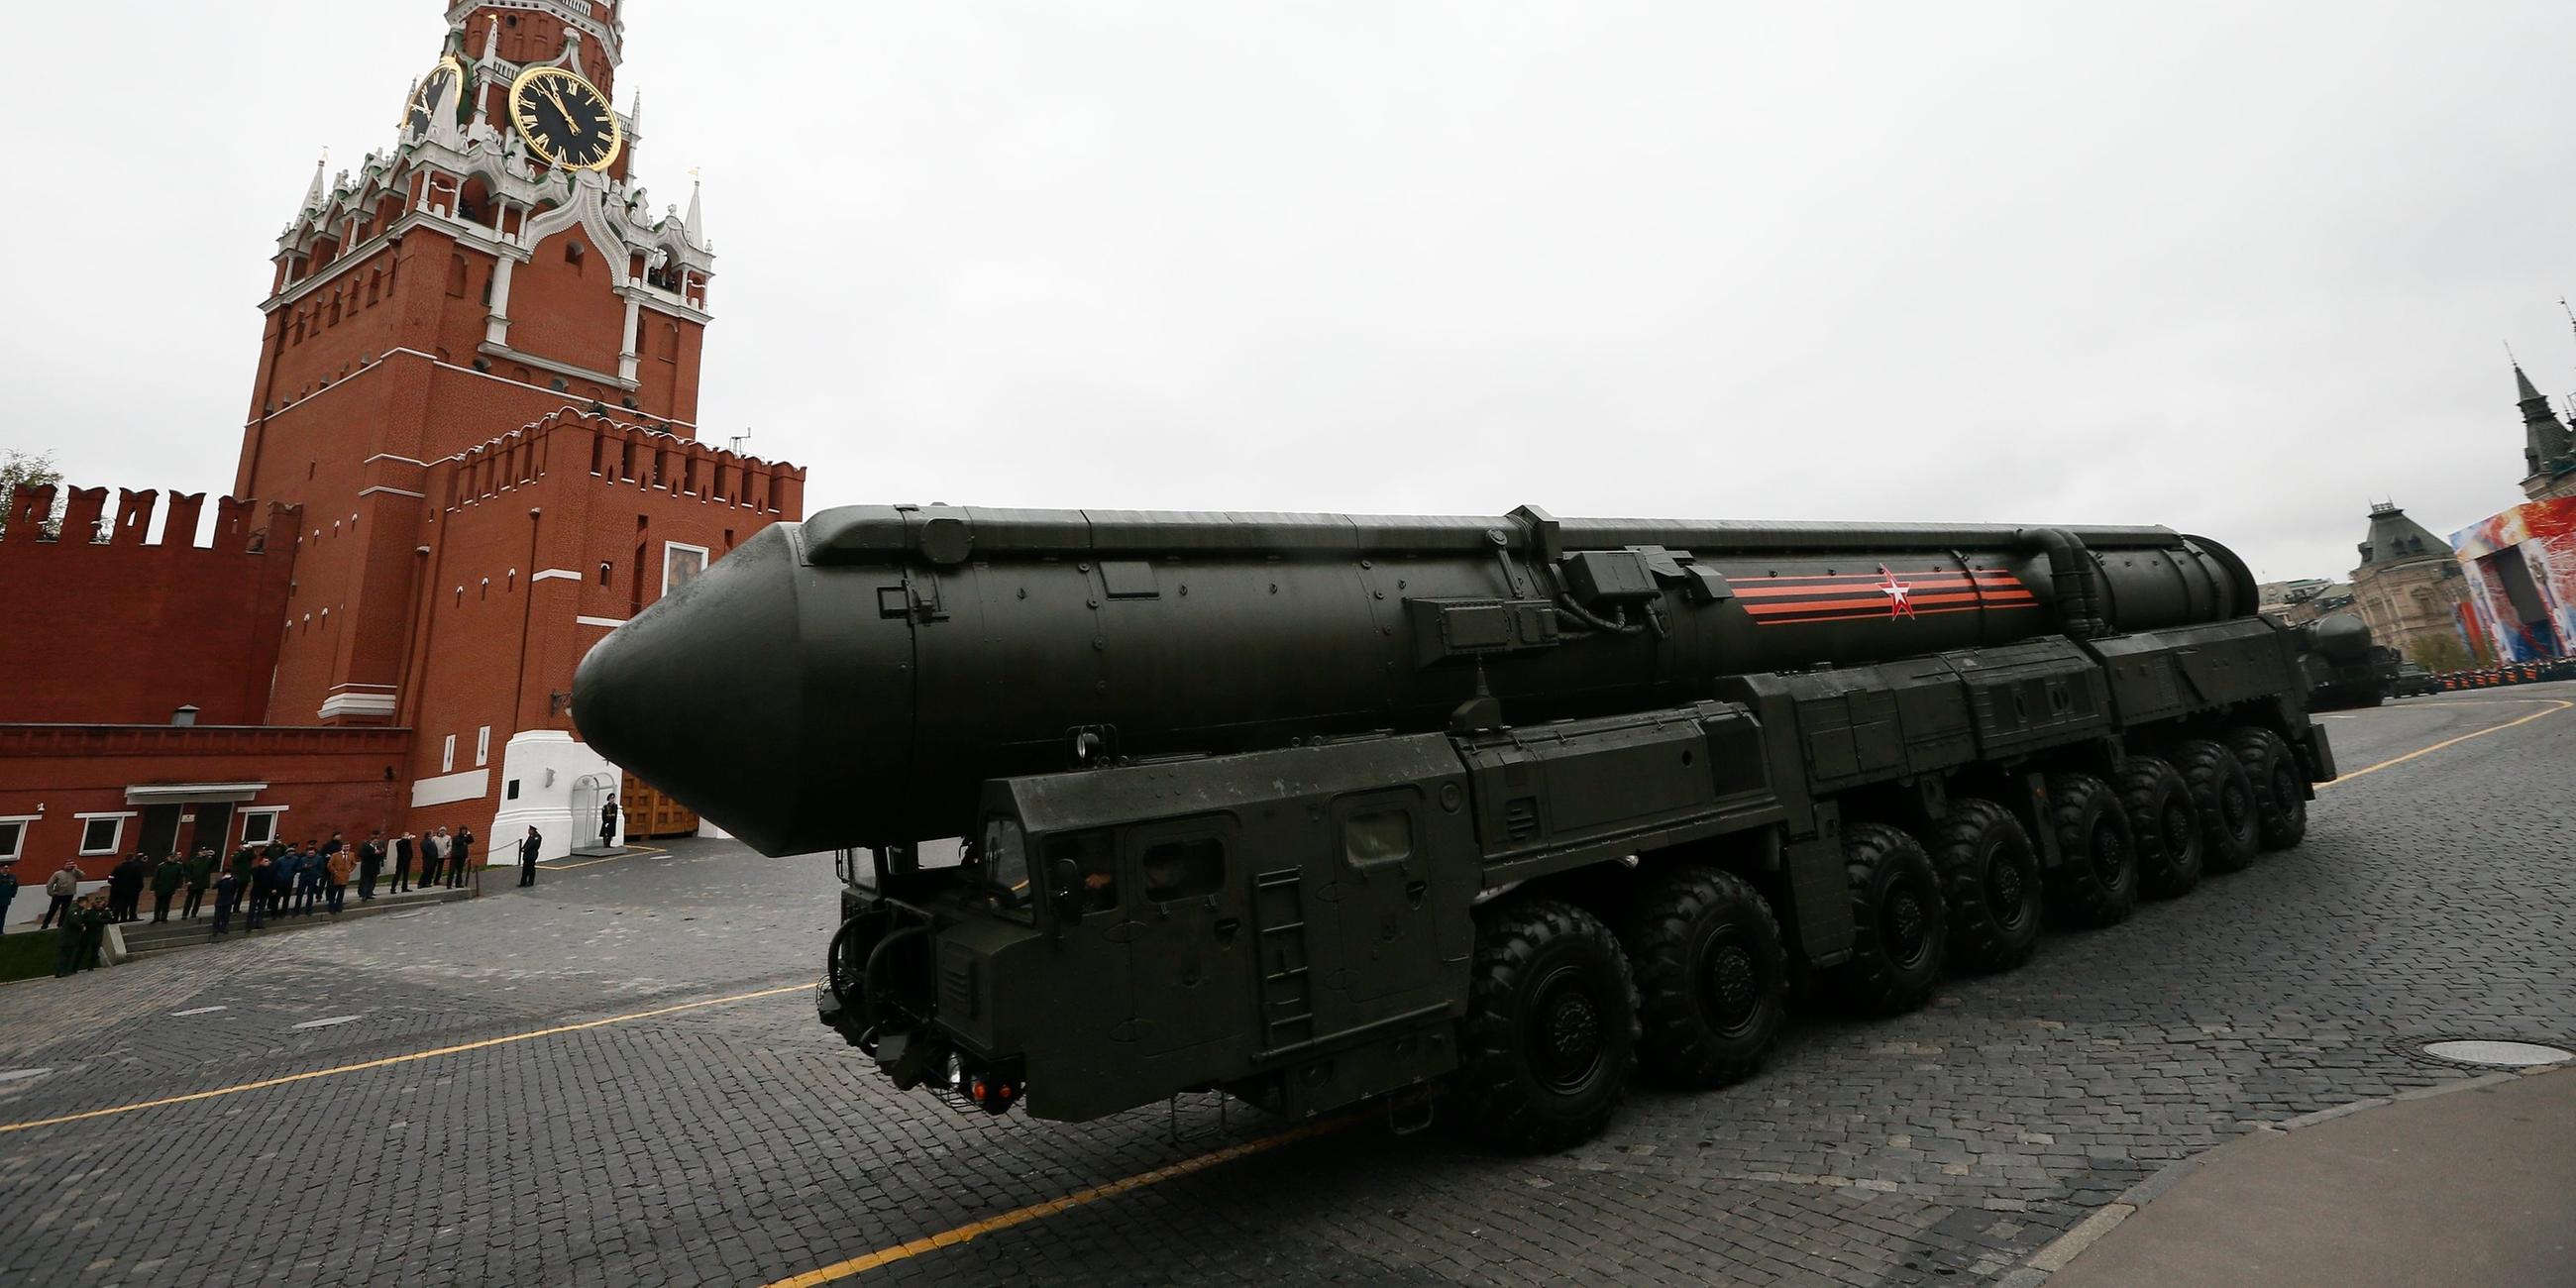 Archiv: Russische Topol-M Atomrakete bei Militärparade auf dem Roten Platz in Moskau